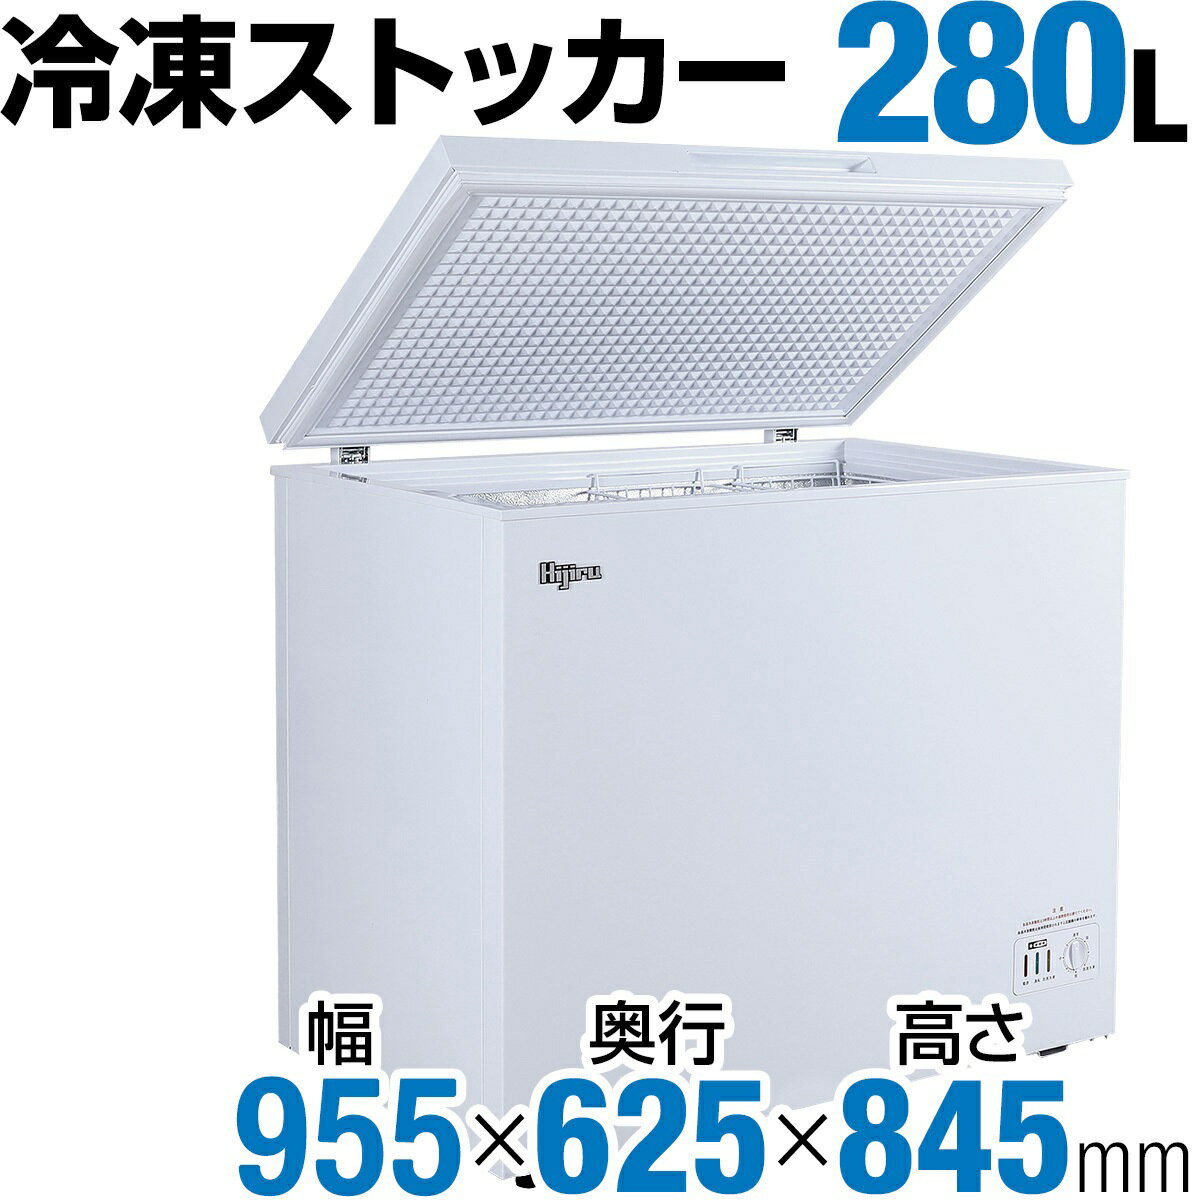 【楽天市場】城島 Hijiru 冷凍ストッカー 280L チェストタイプ HJR 